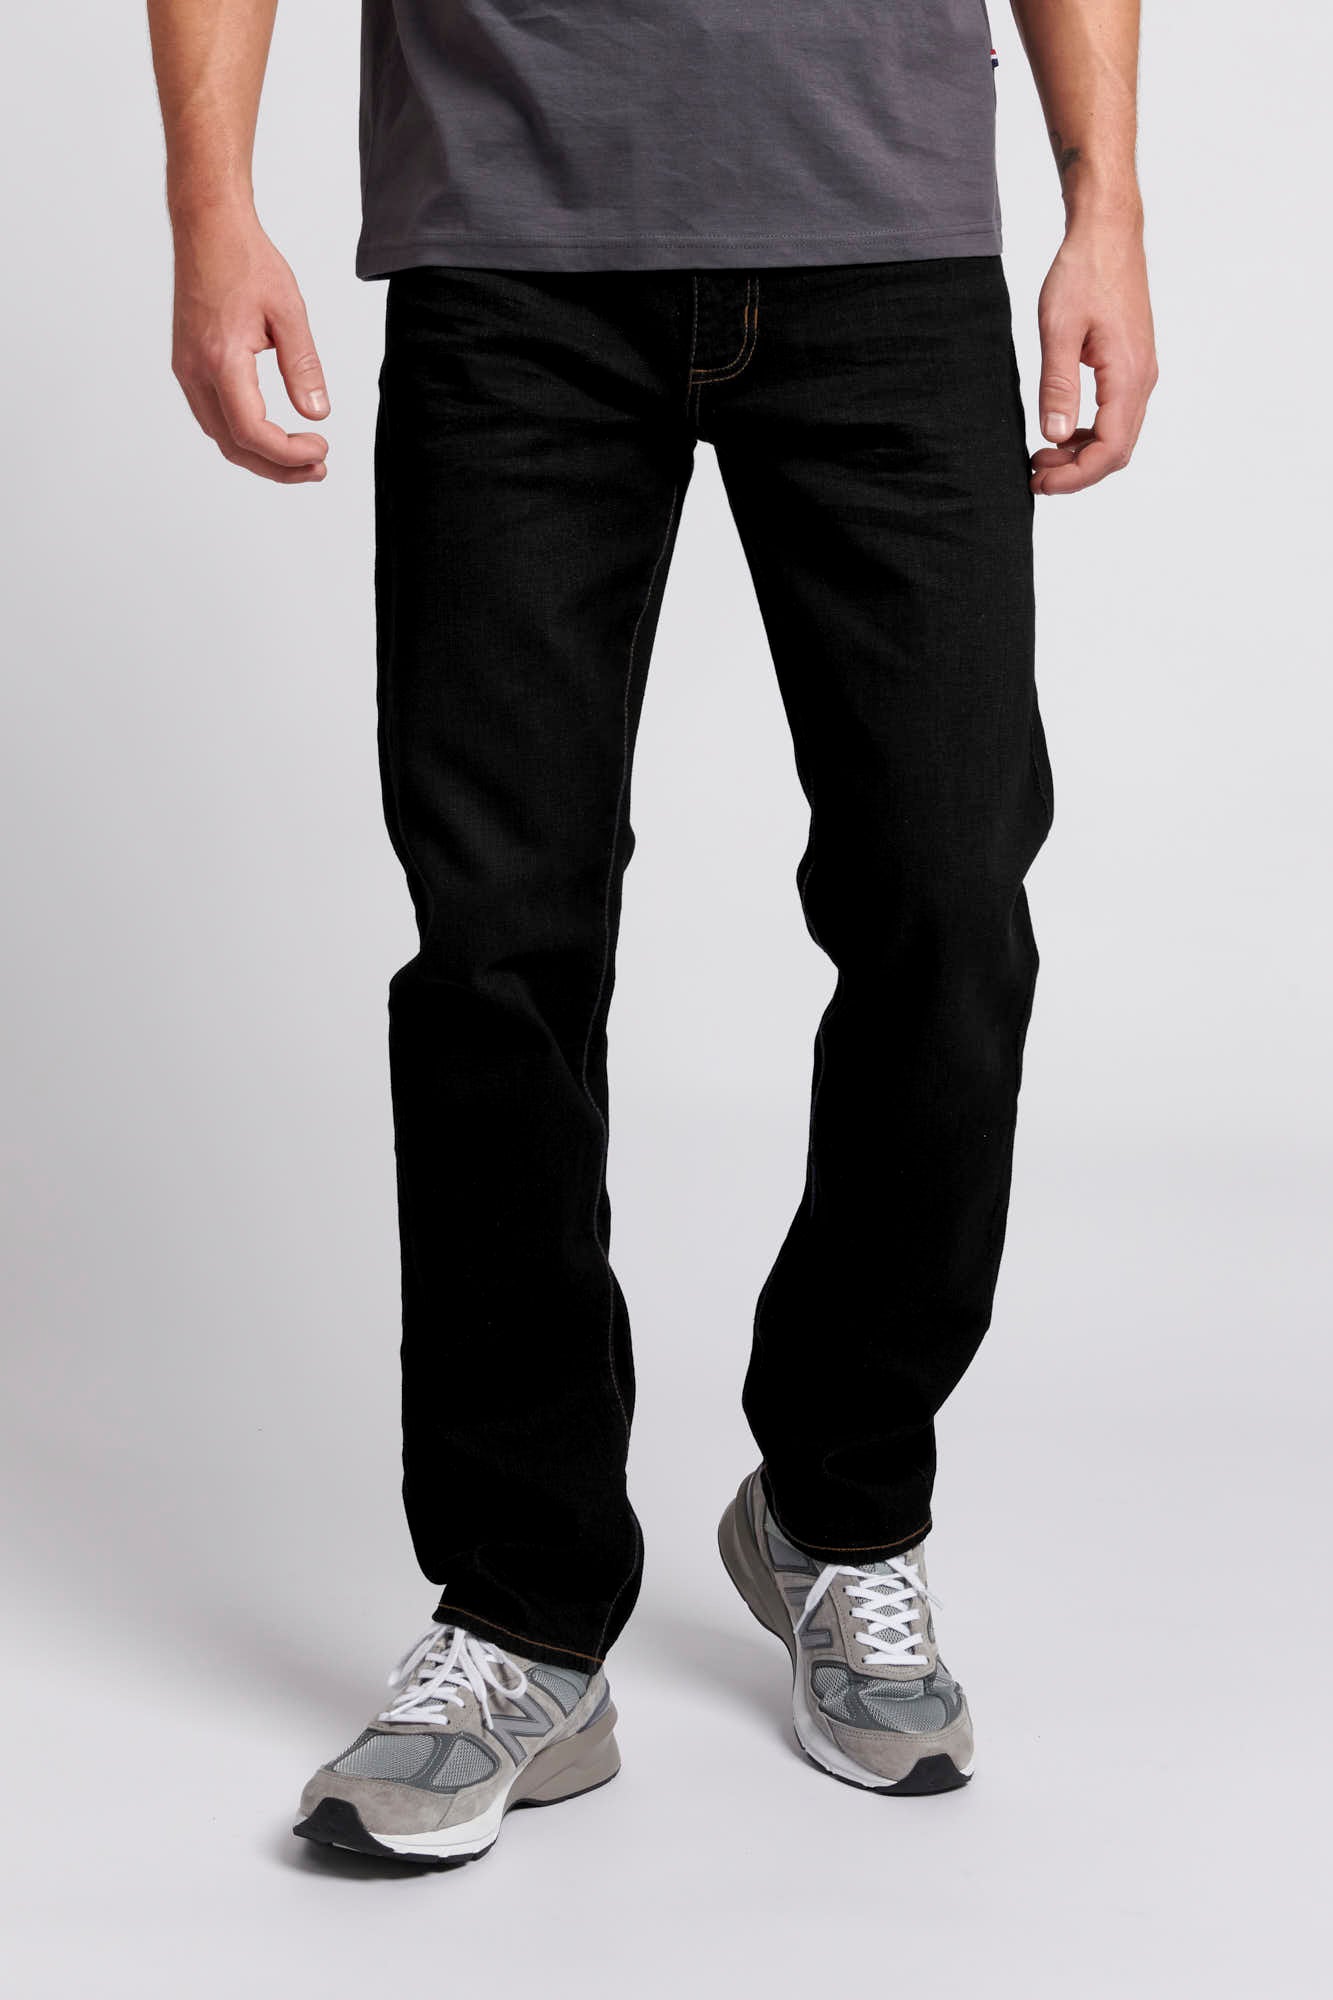 U.S. Polo Assn. Mens 5 Pocket Regular Fit Denim Jeans in Black Wash